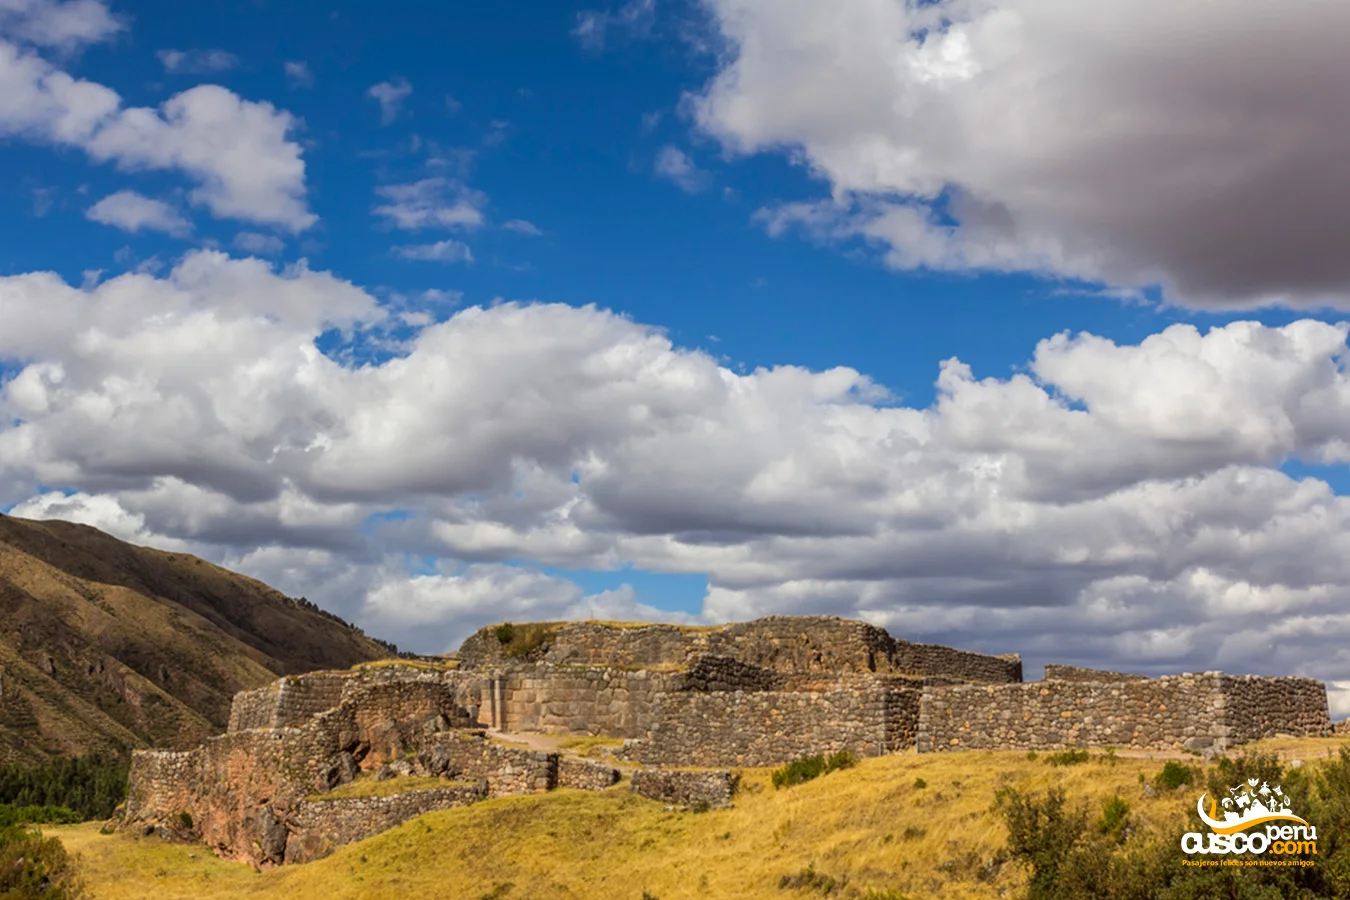 Complexo arqueológico de Puca Pucara. Fonte: CuscoPeru.com